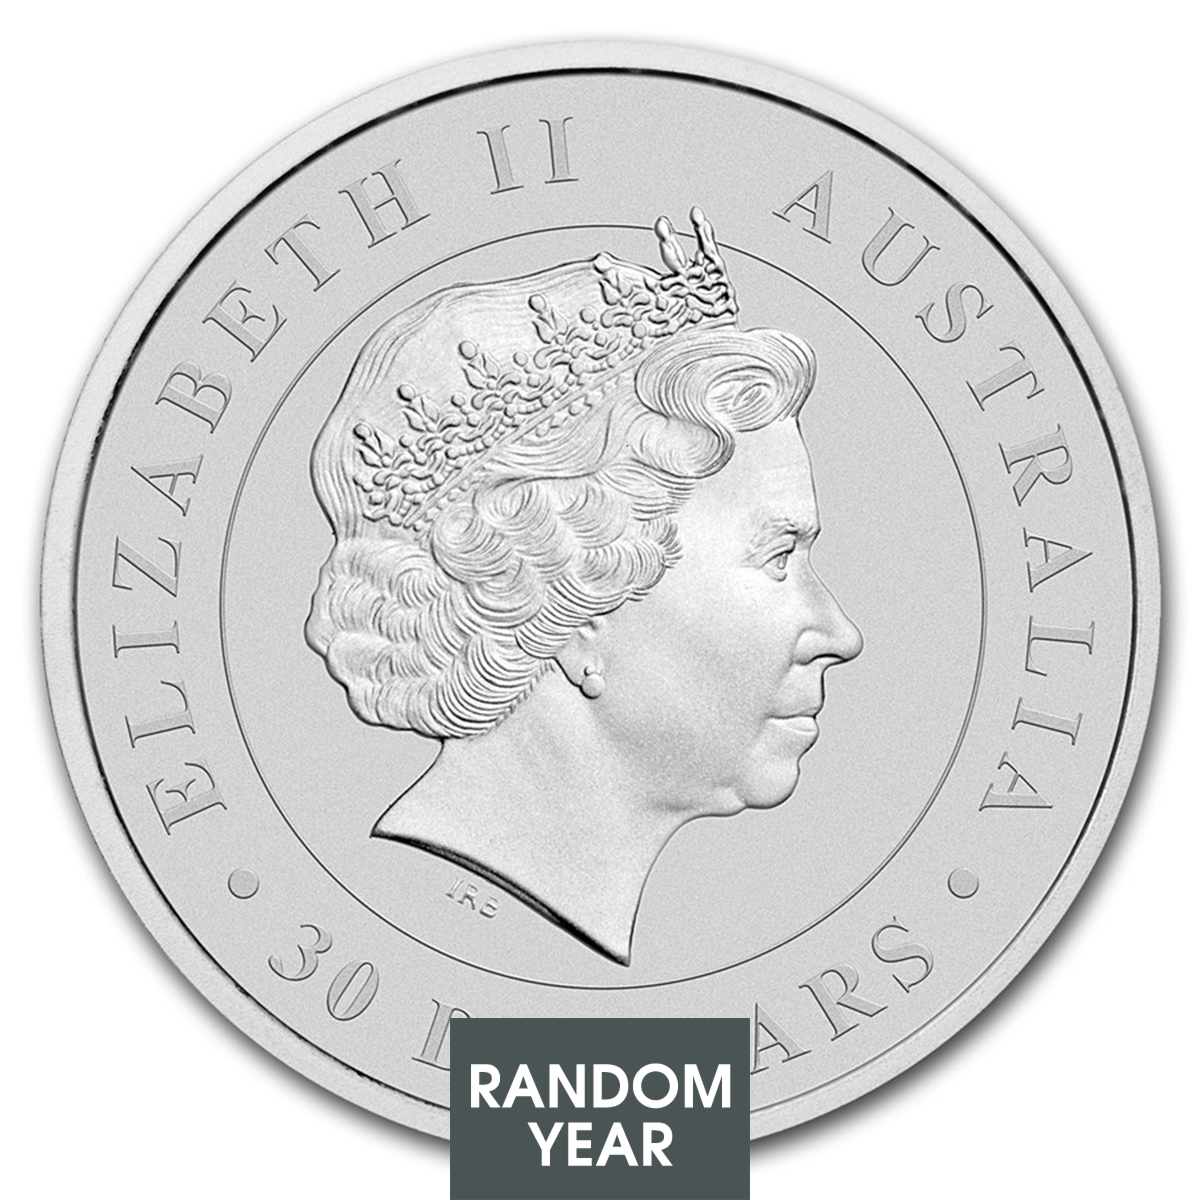 1 Kilo Silver Coin - Koala